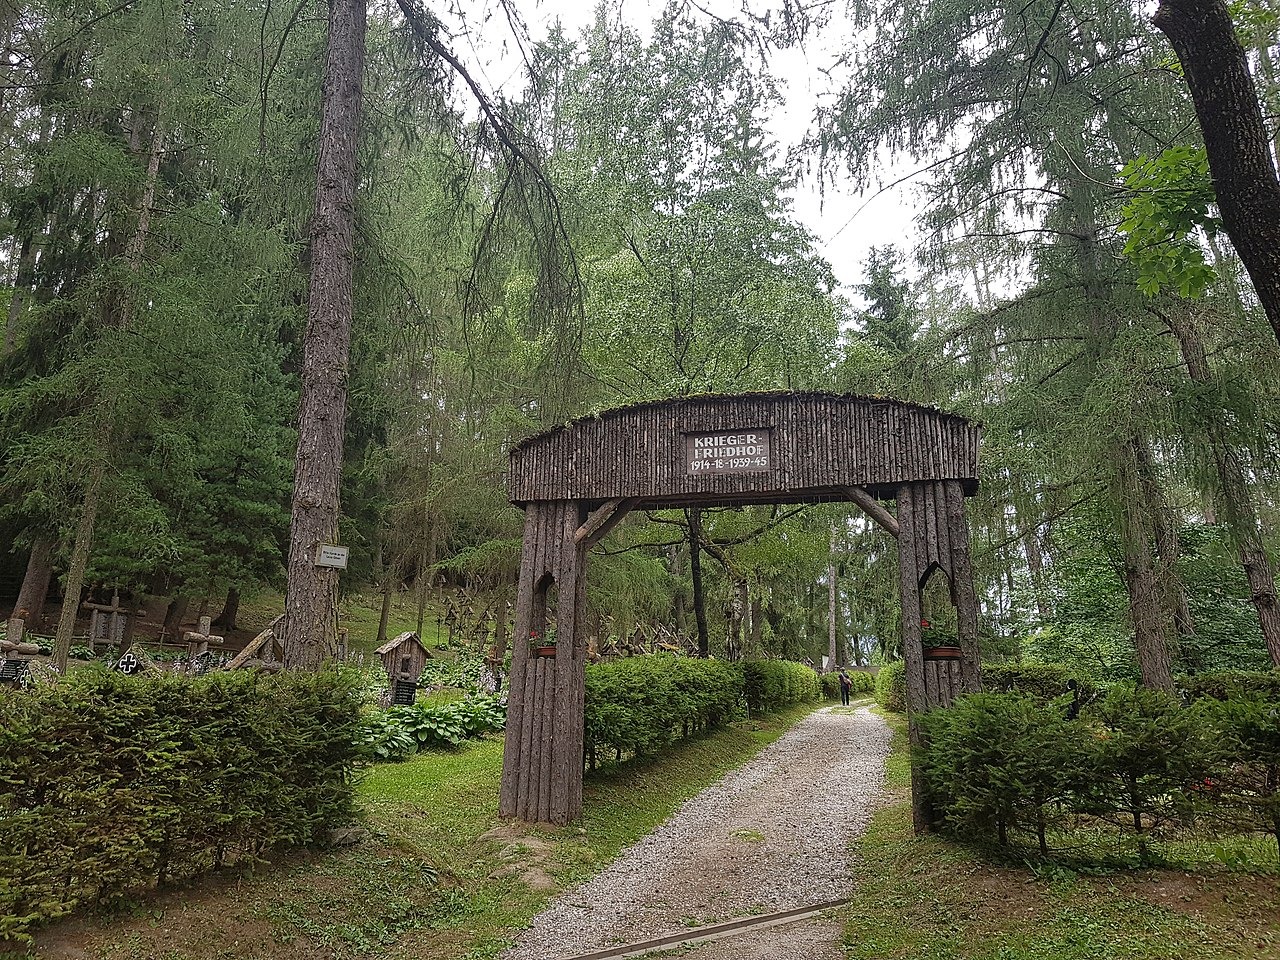  Die Bosniaken Kommen: Vojno groblje naših predaka u Italiji